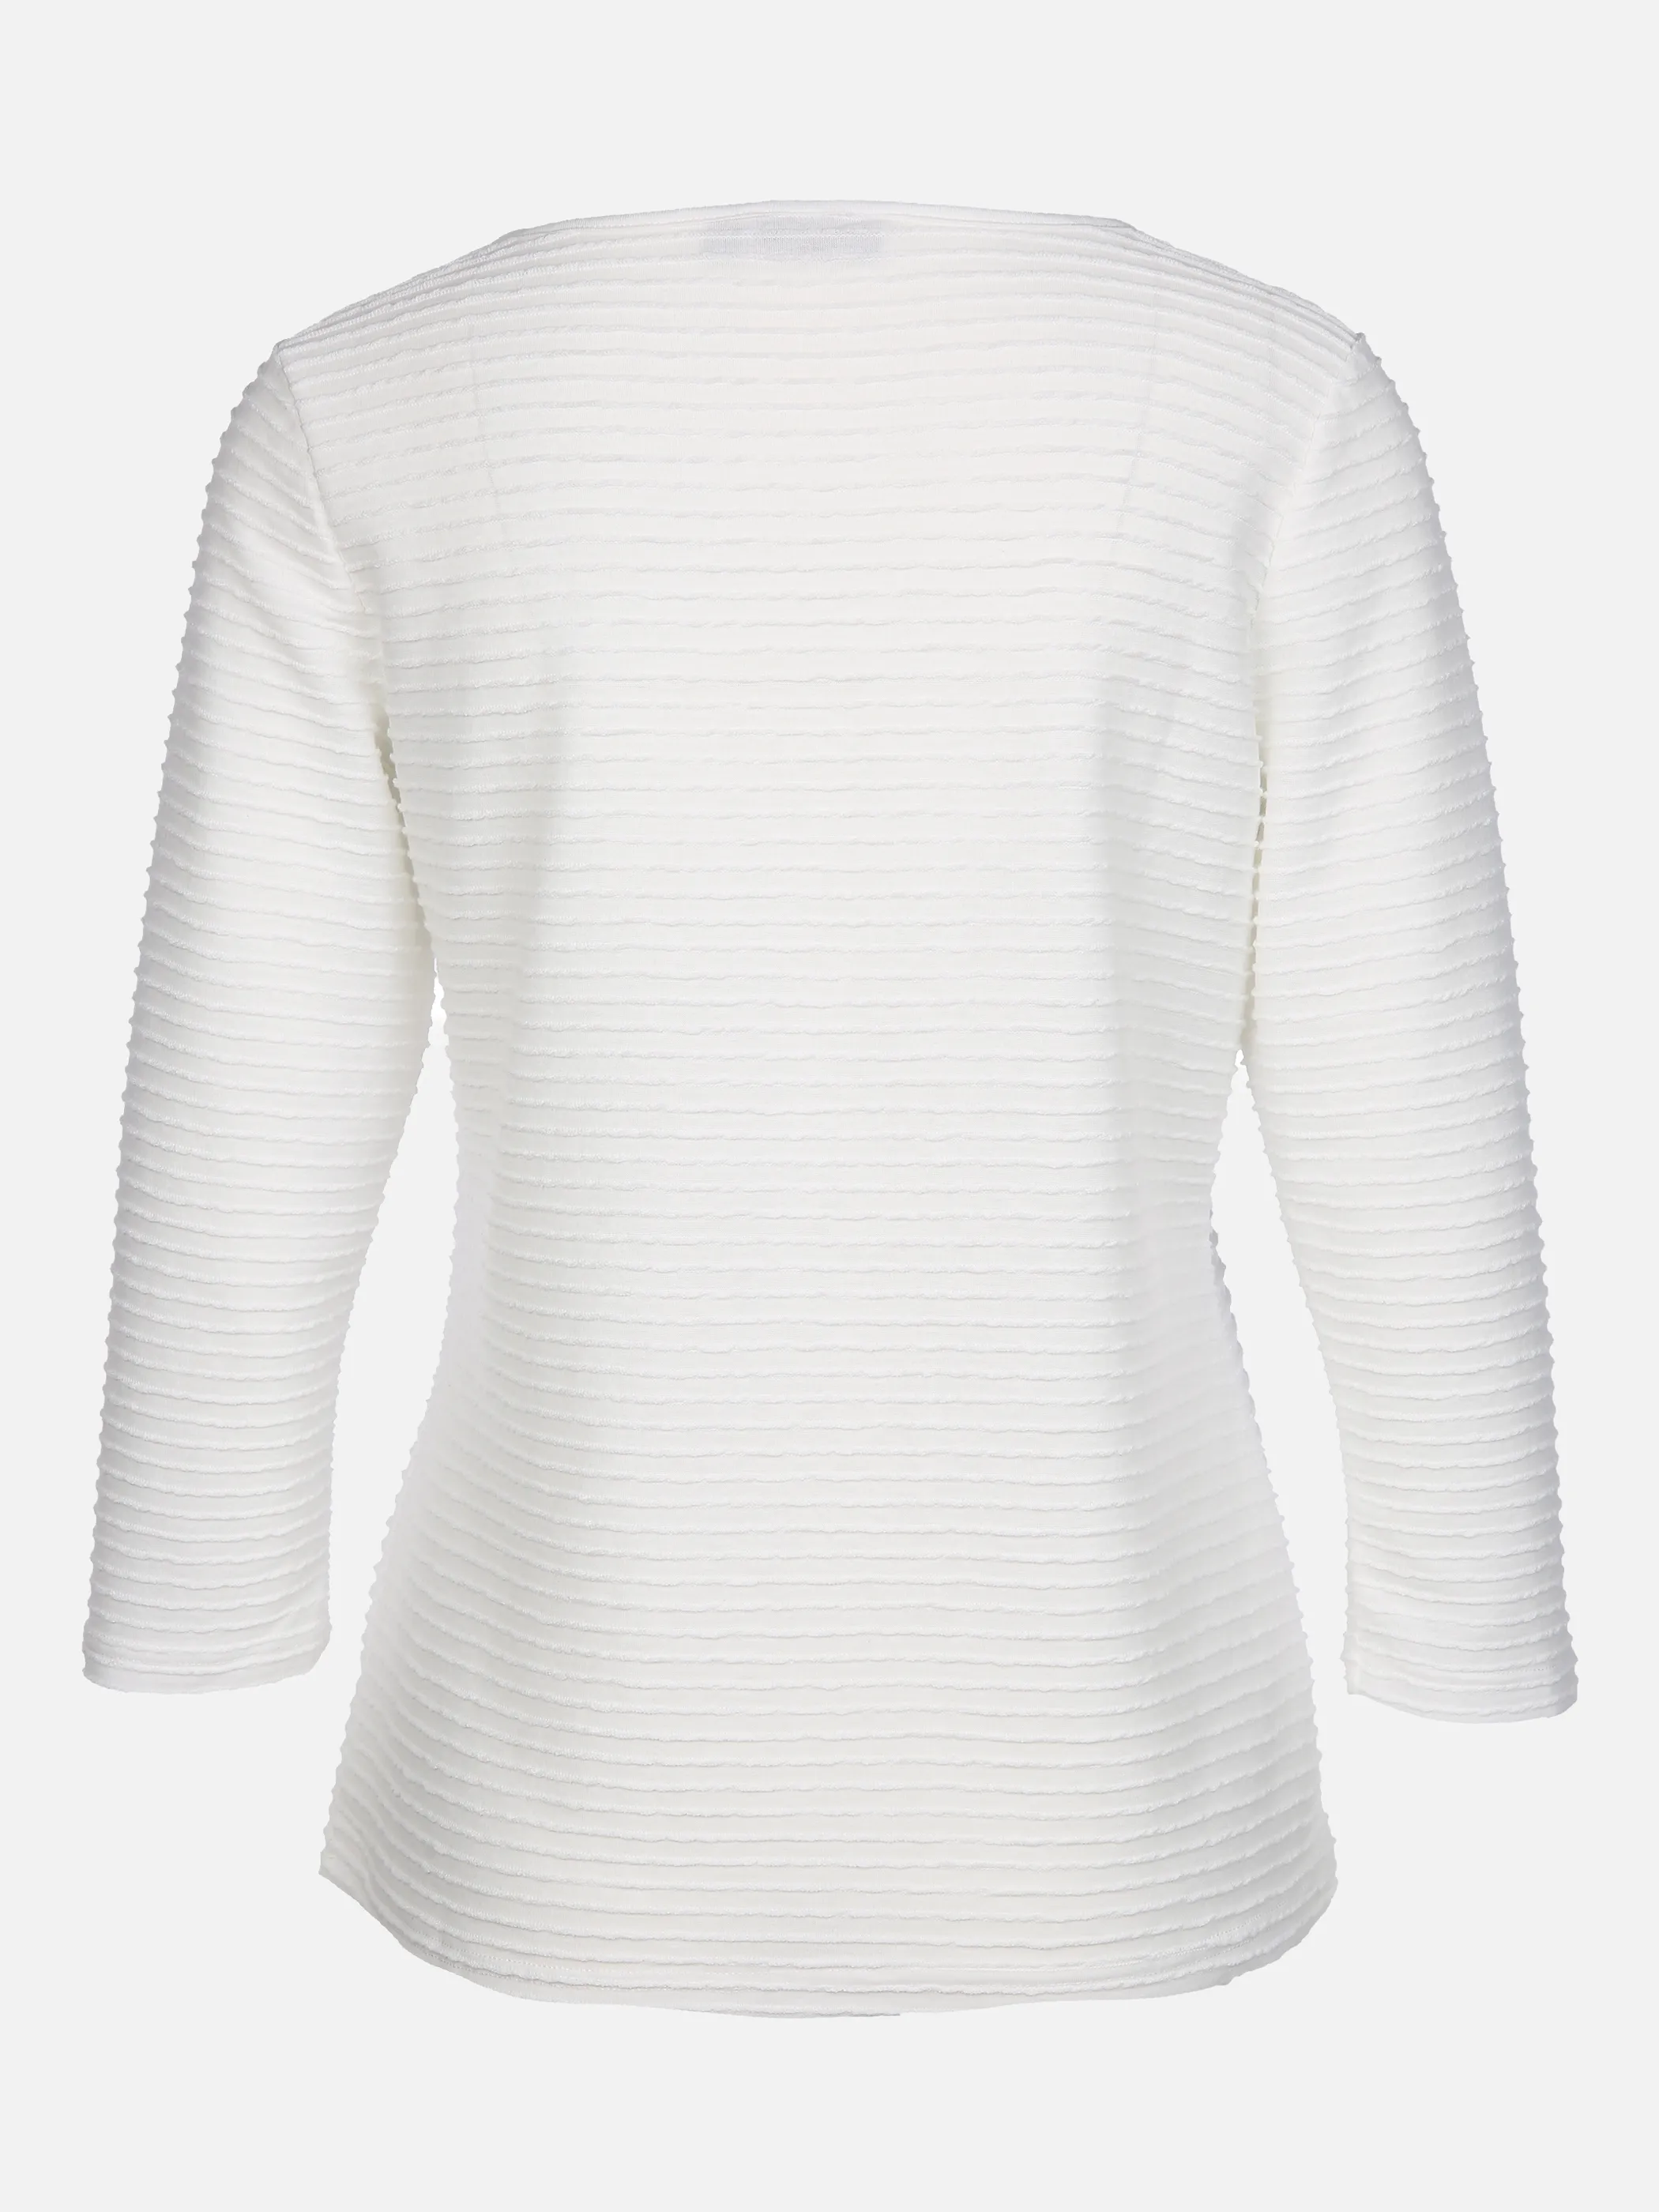 Sure Da-Struktur-Shirt 3/4 Arm Weiß 858012 OFFWHITE 2